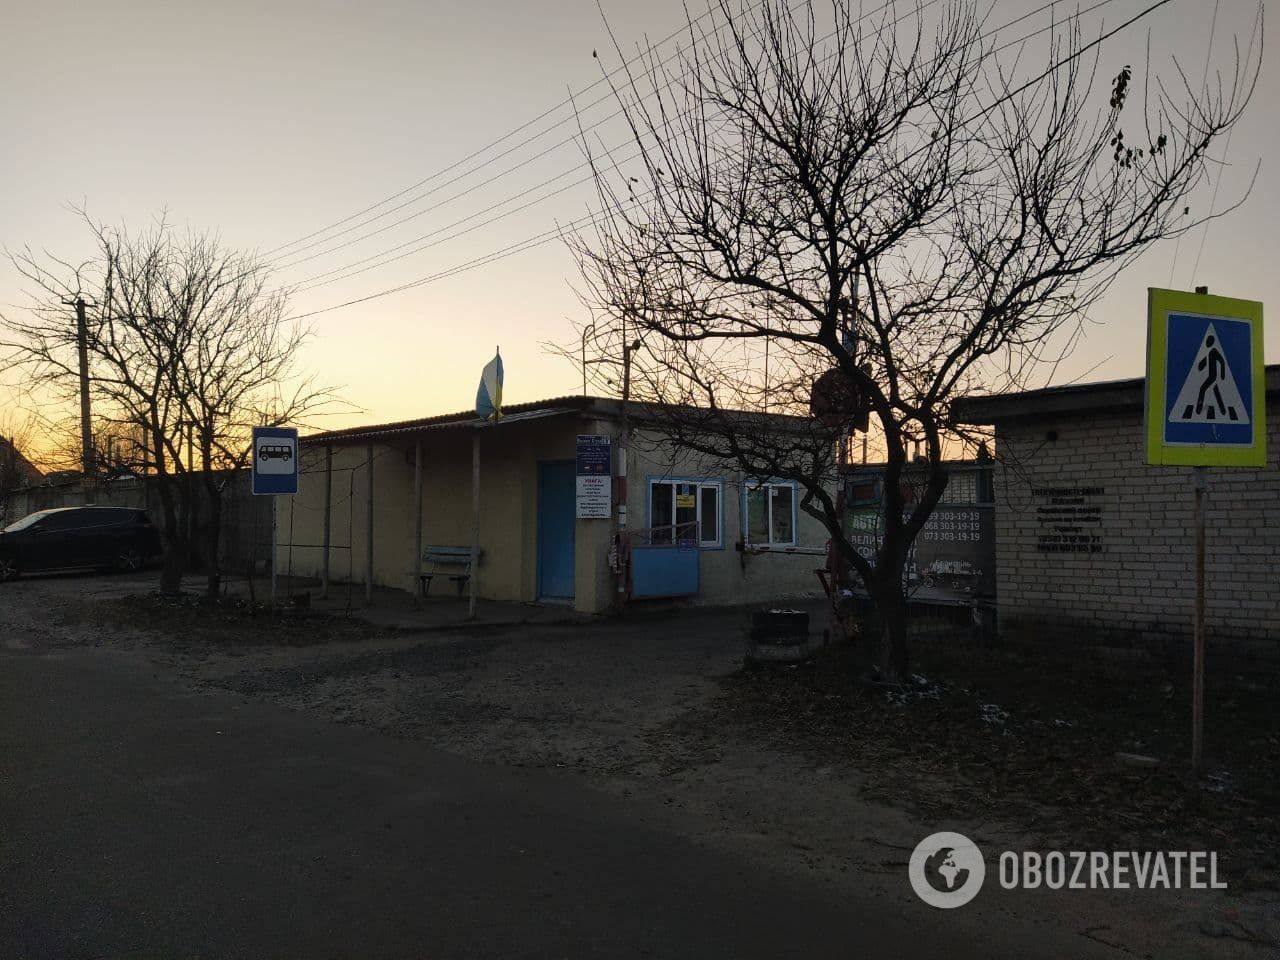 Кооператив "Прометей" в Борисполе Киевской области, где нашли тело киевского музыканта